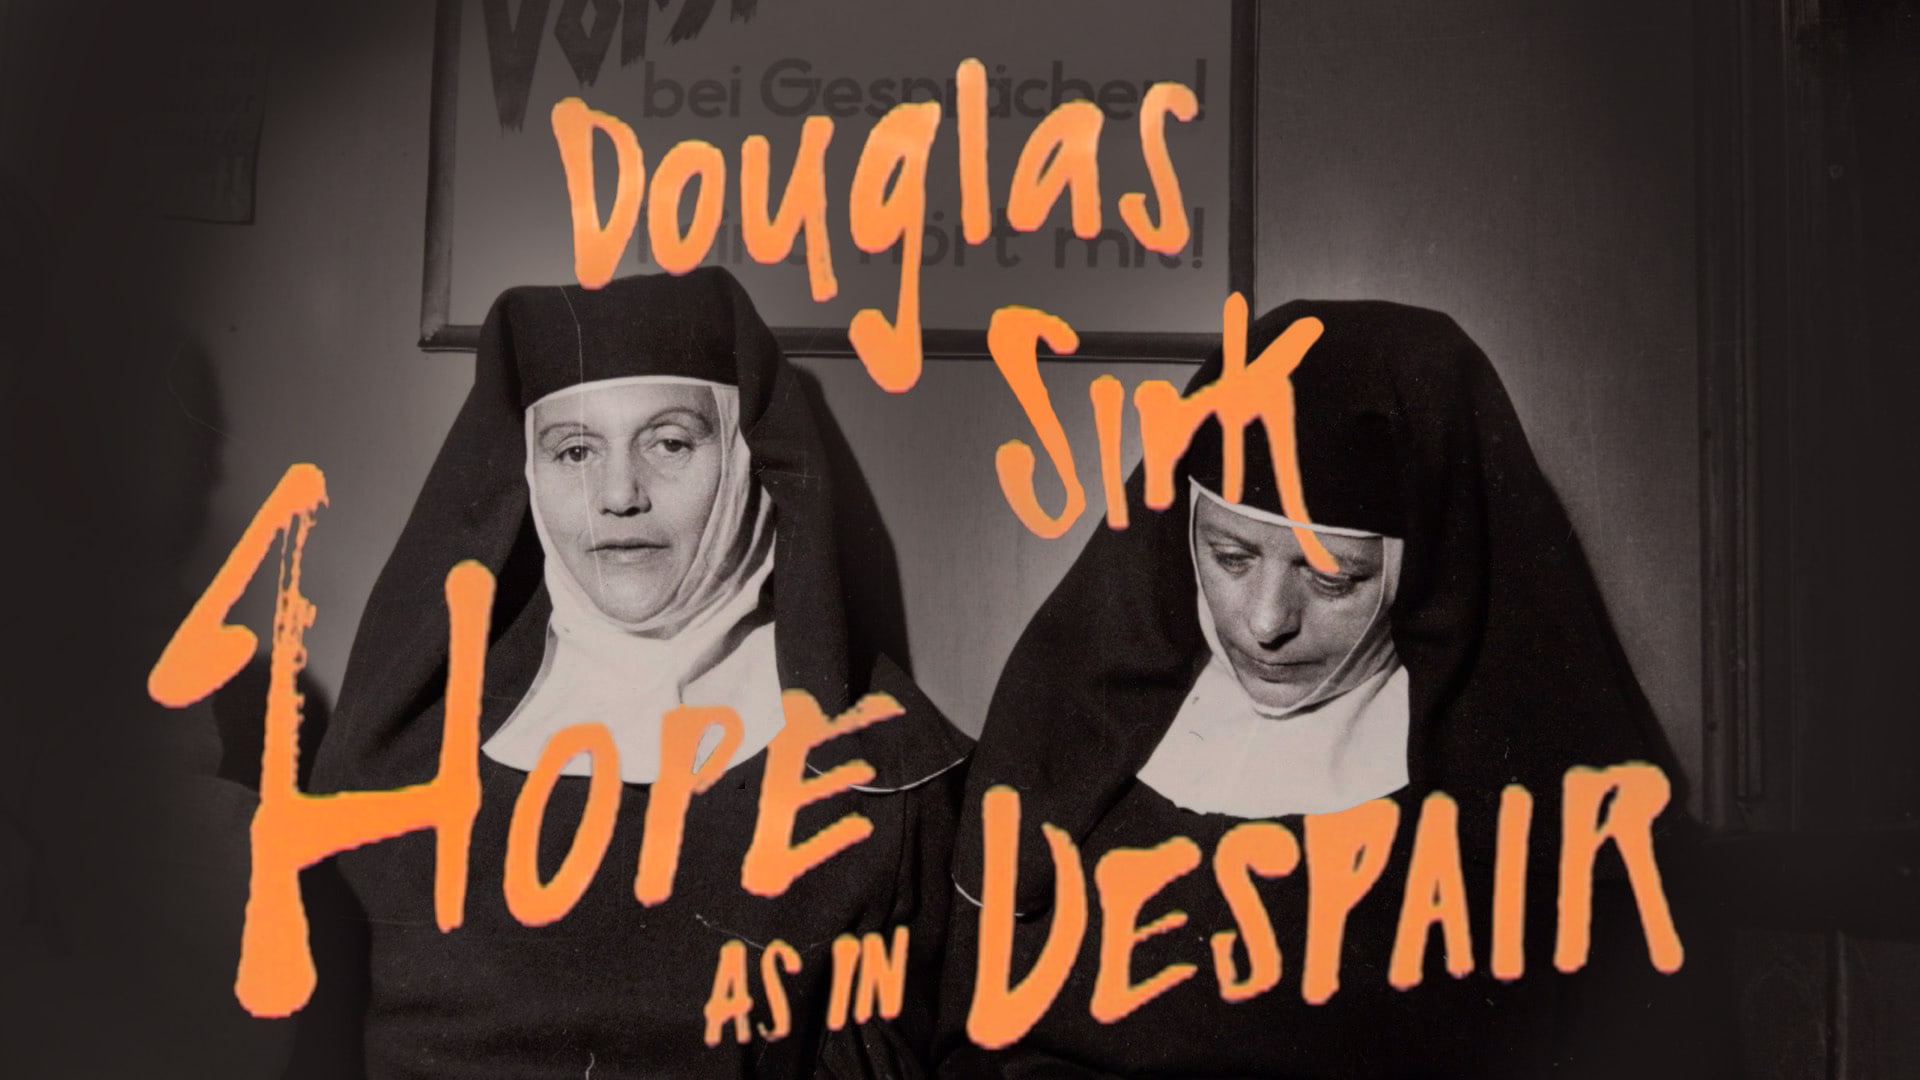 Douglas Sirk - Hope as in Despair